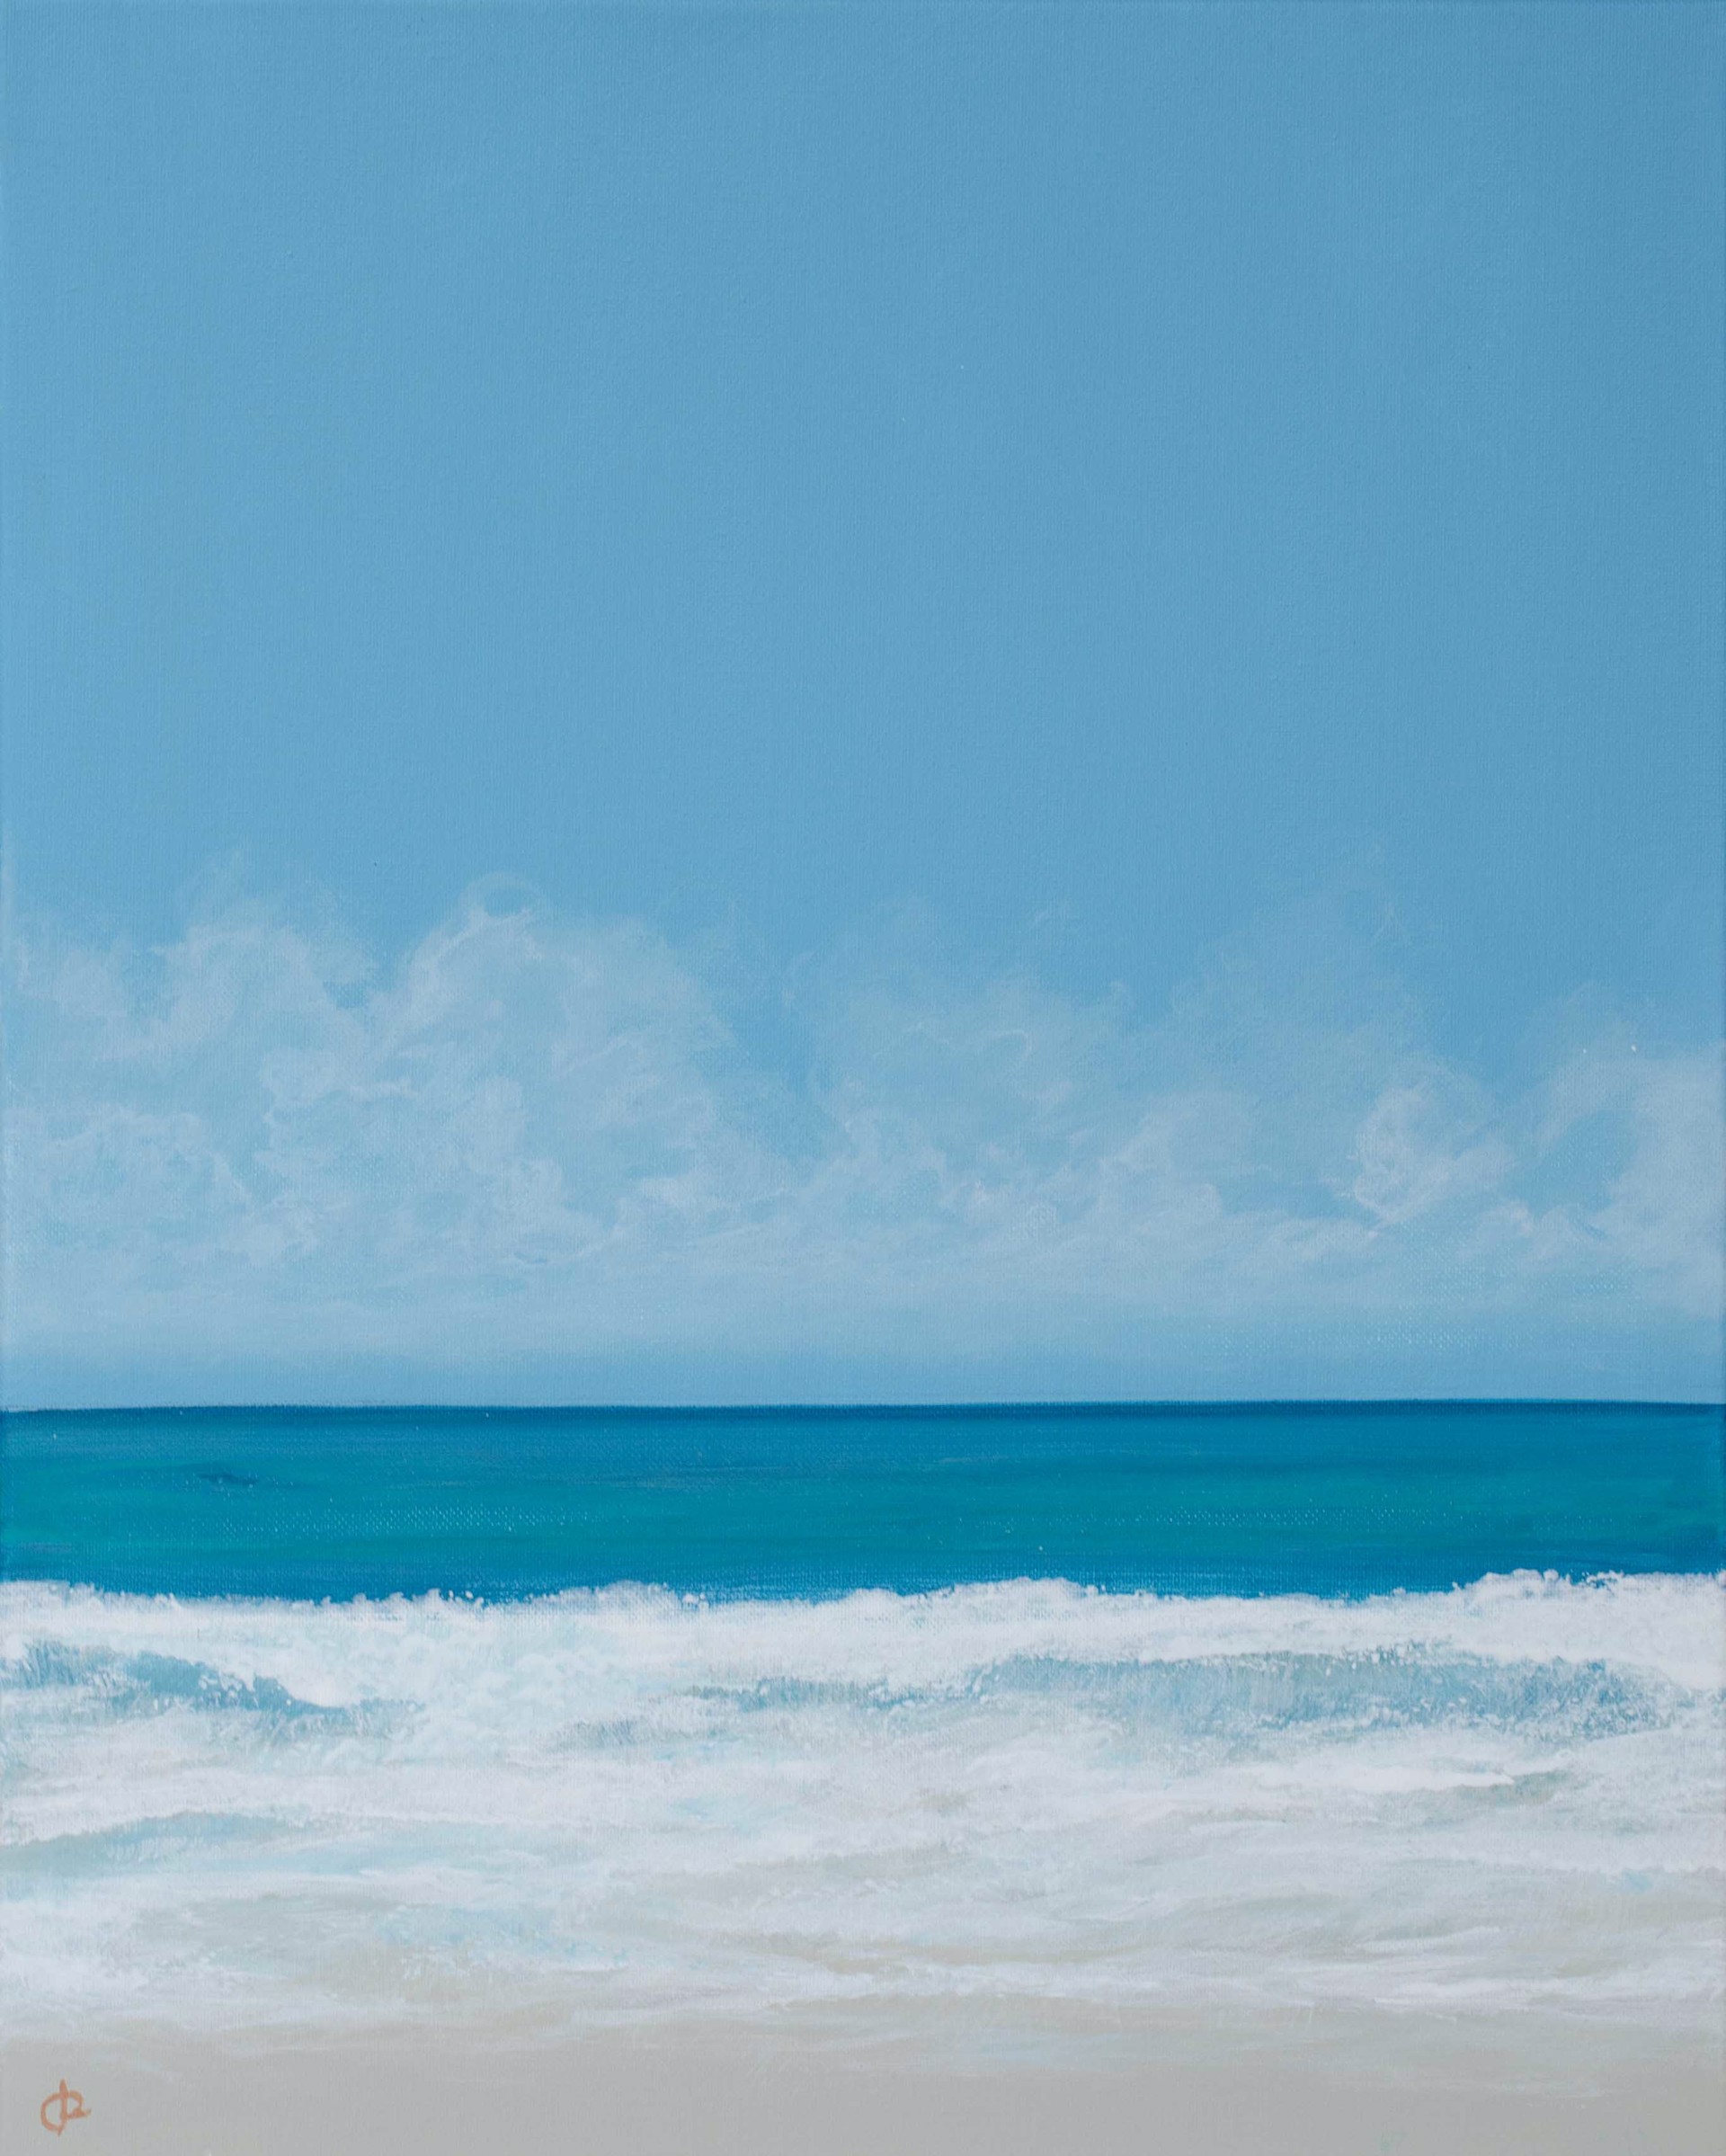 Surf Break II by Peter Laughton